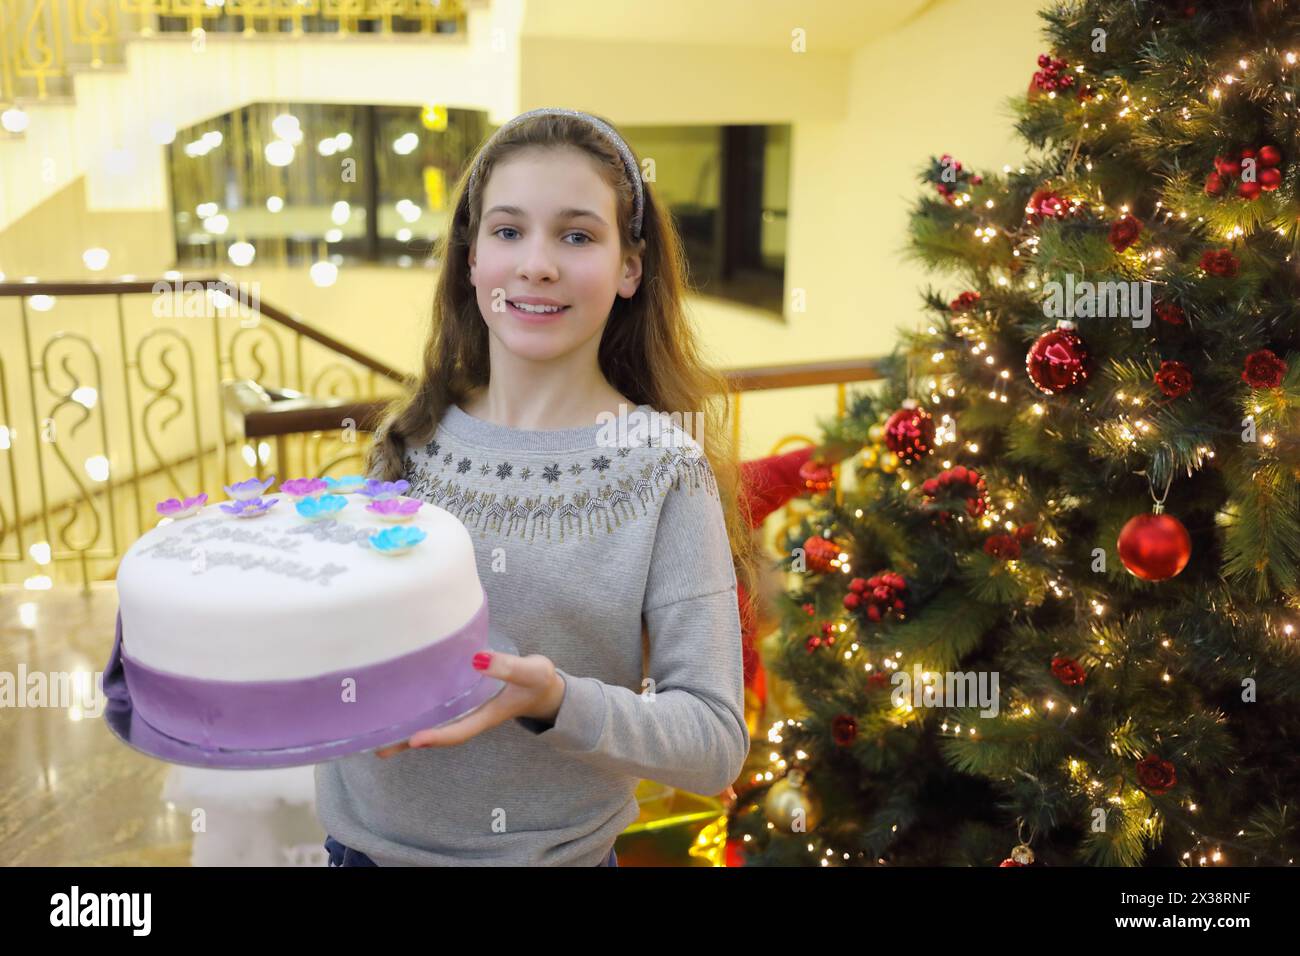 La bella ragazza tiene la torta dolce vicino all'albero della massa del battesimo, testo sulla torta - buon compleanno Anya Foto Stock